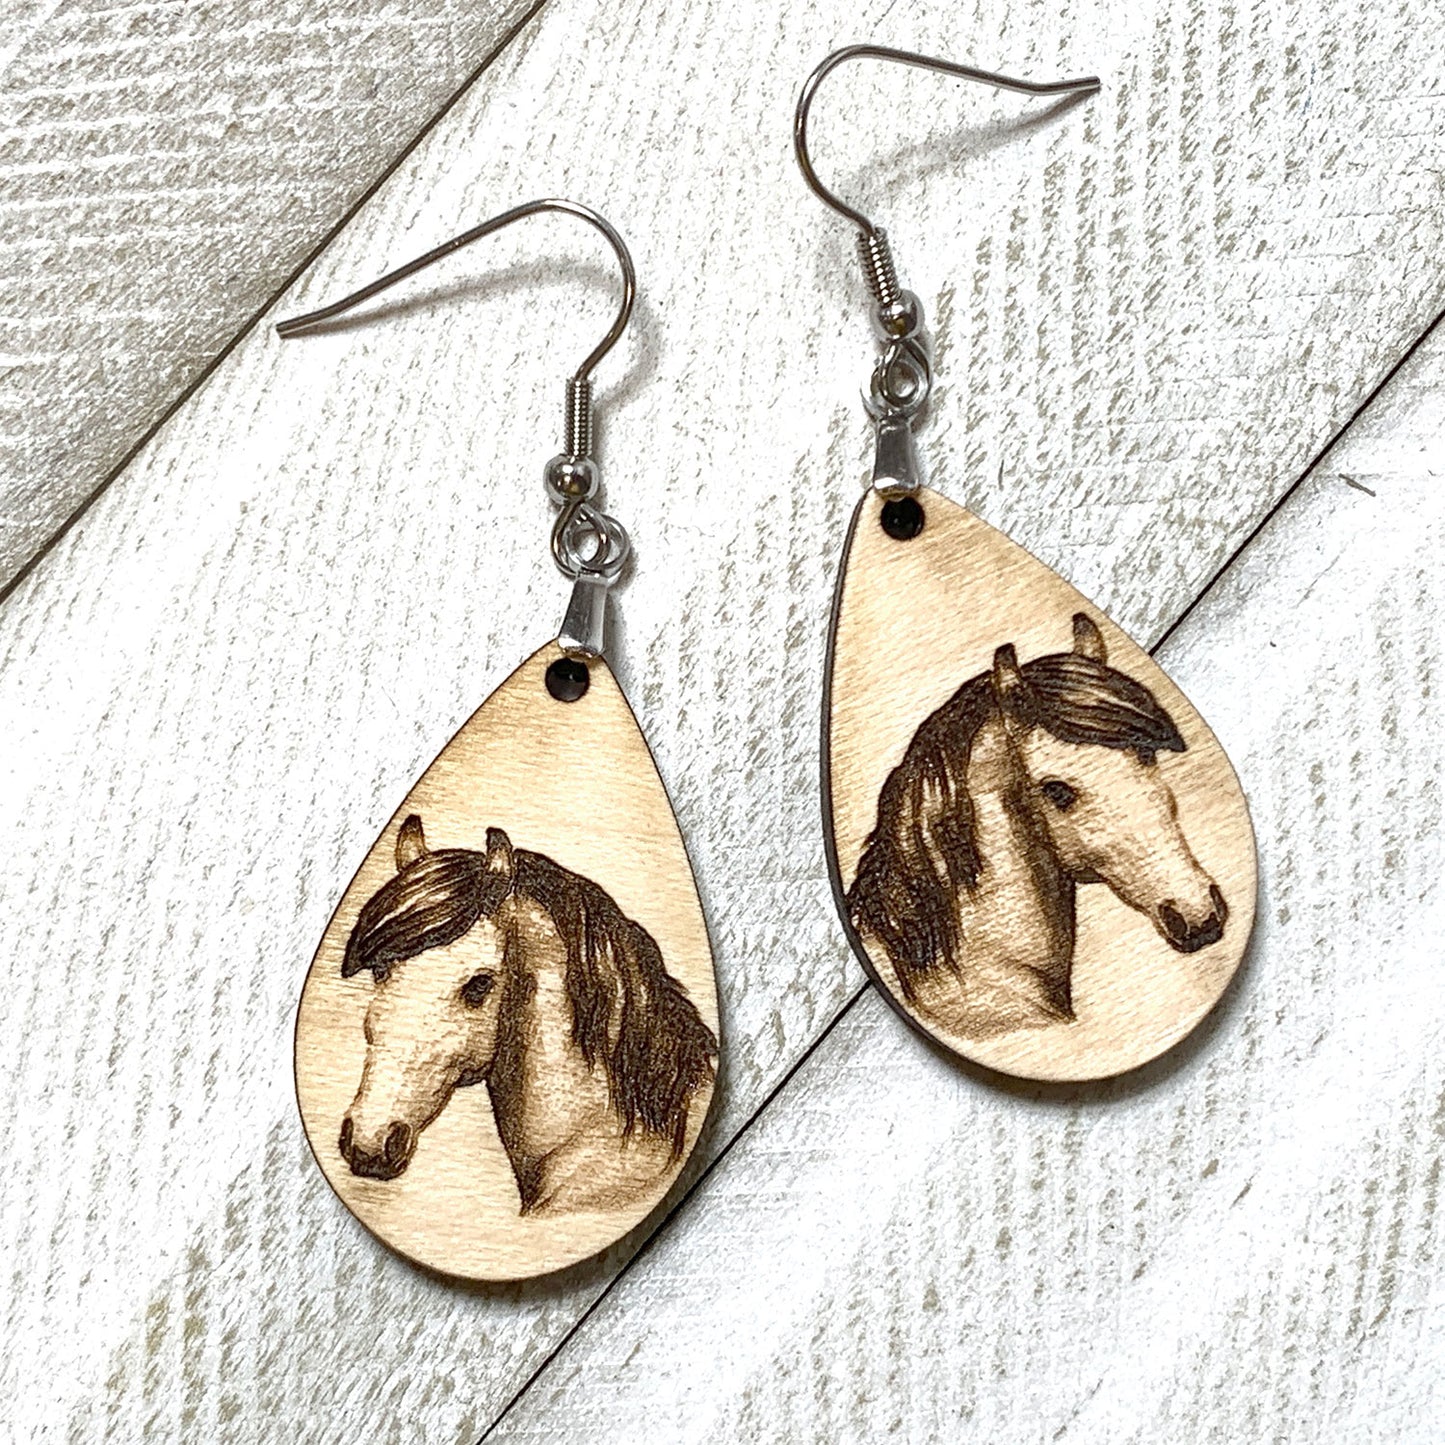 Horse Teardrop Earrings - Western Jewelry